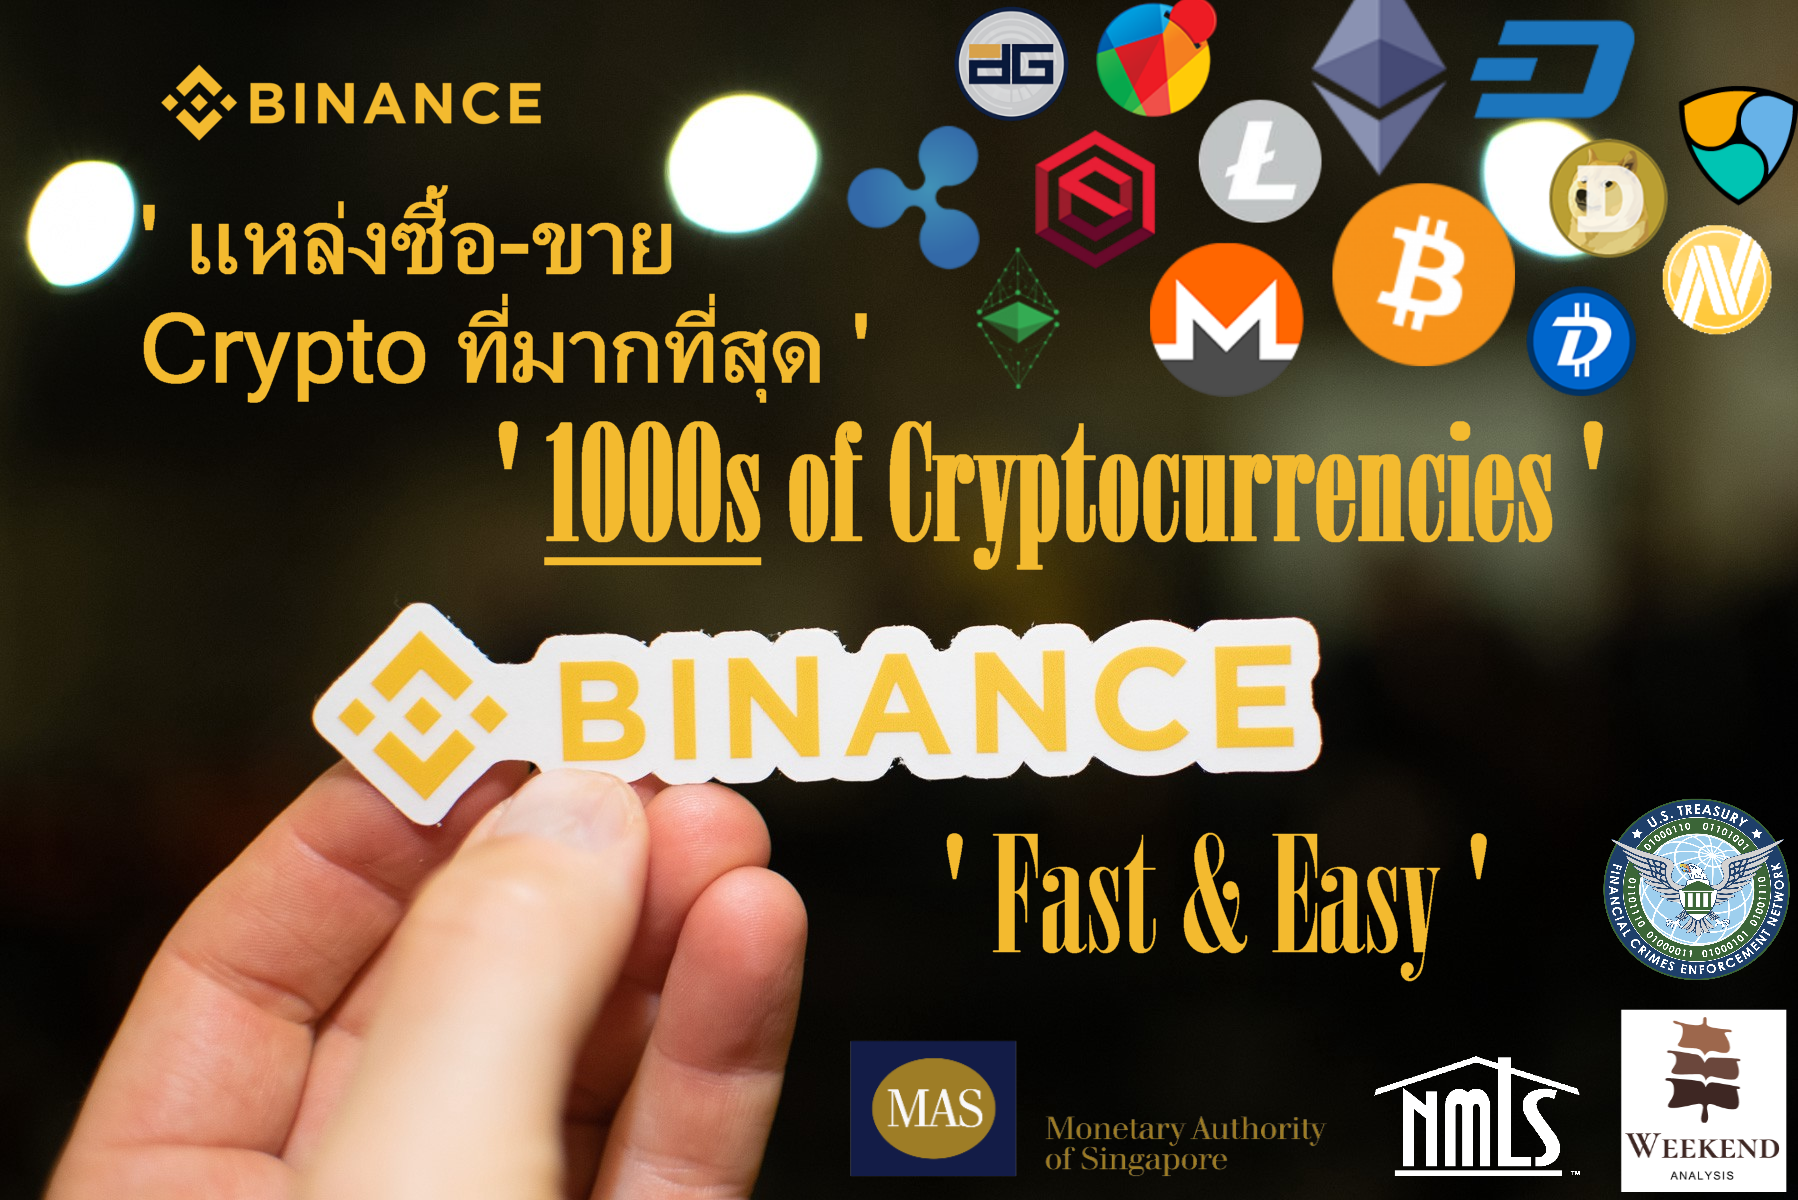 สมัคร Binance BNB ซื้อ Cryptocurrency Bitcoin ยังไง ฝาก ...